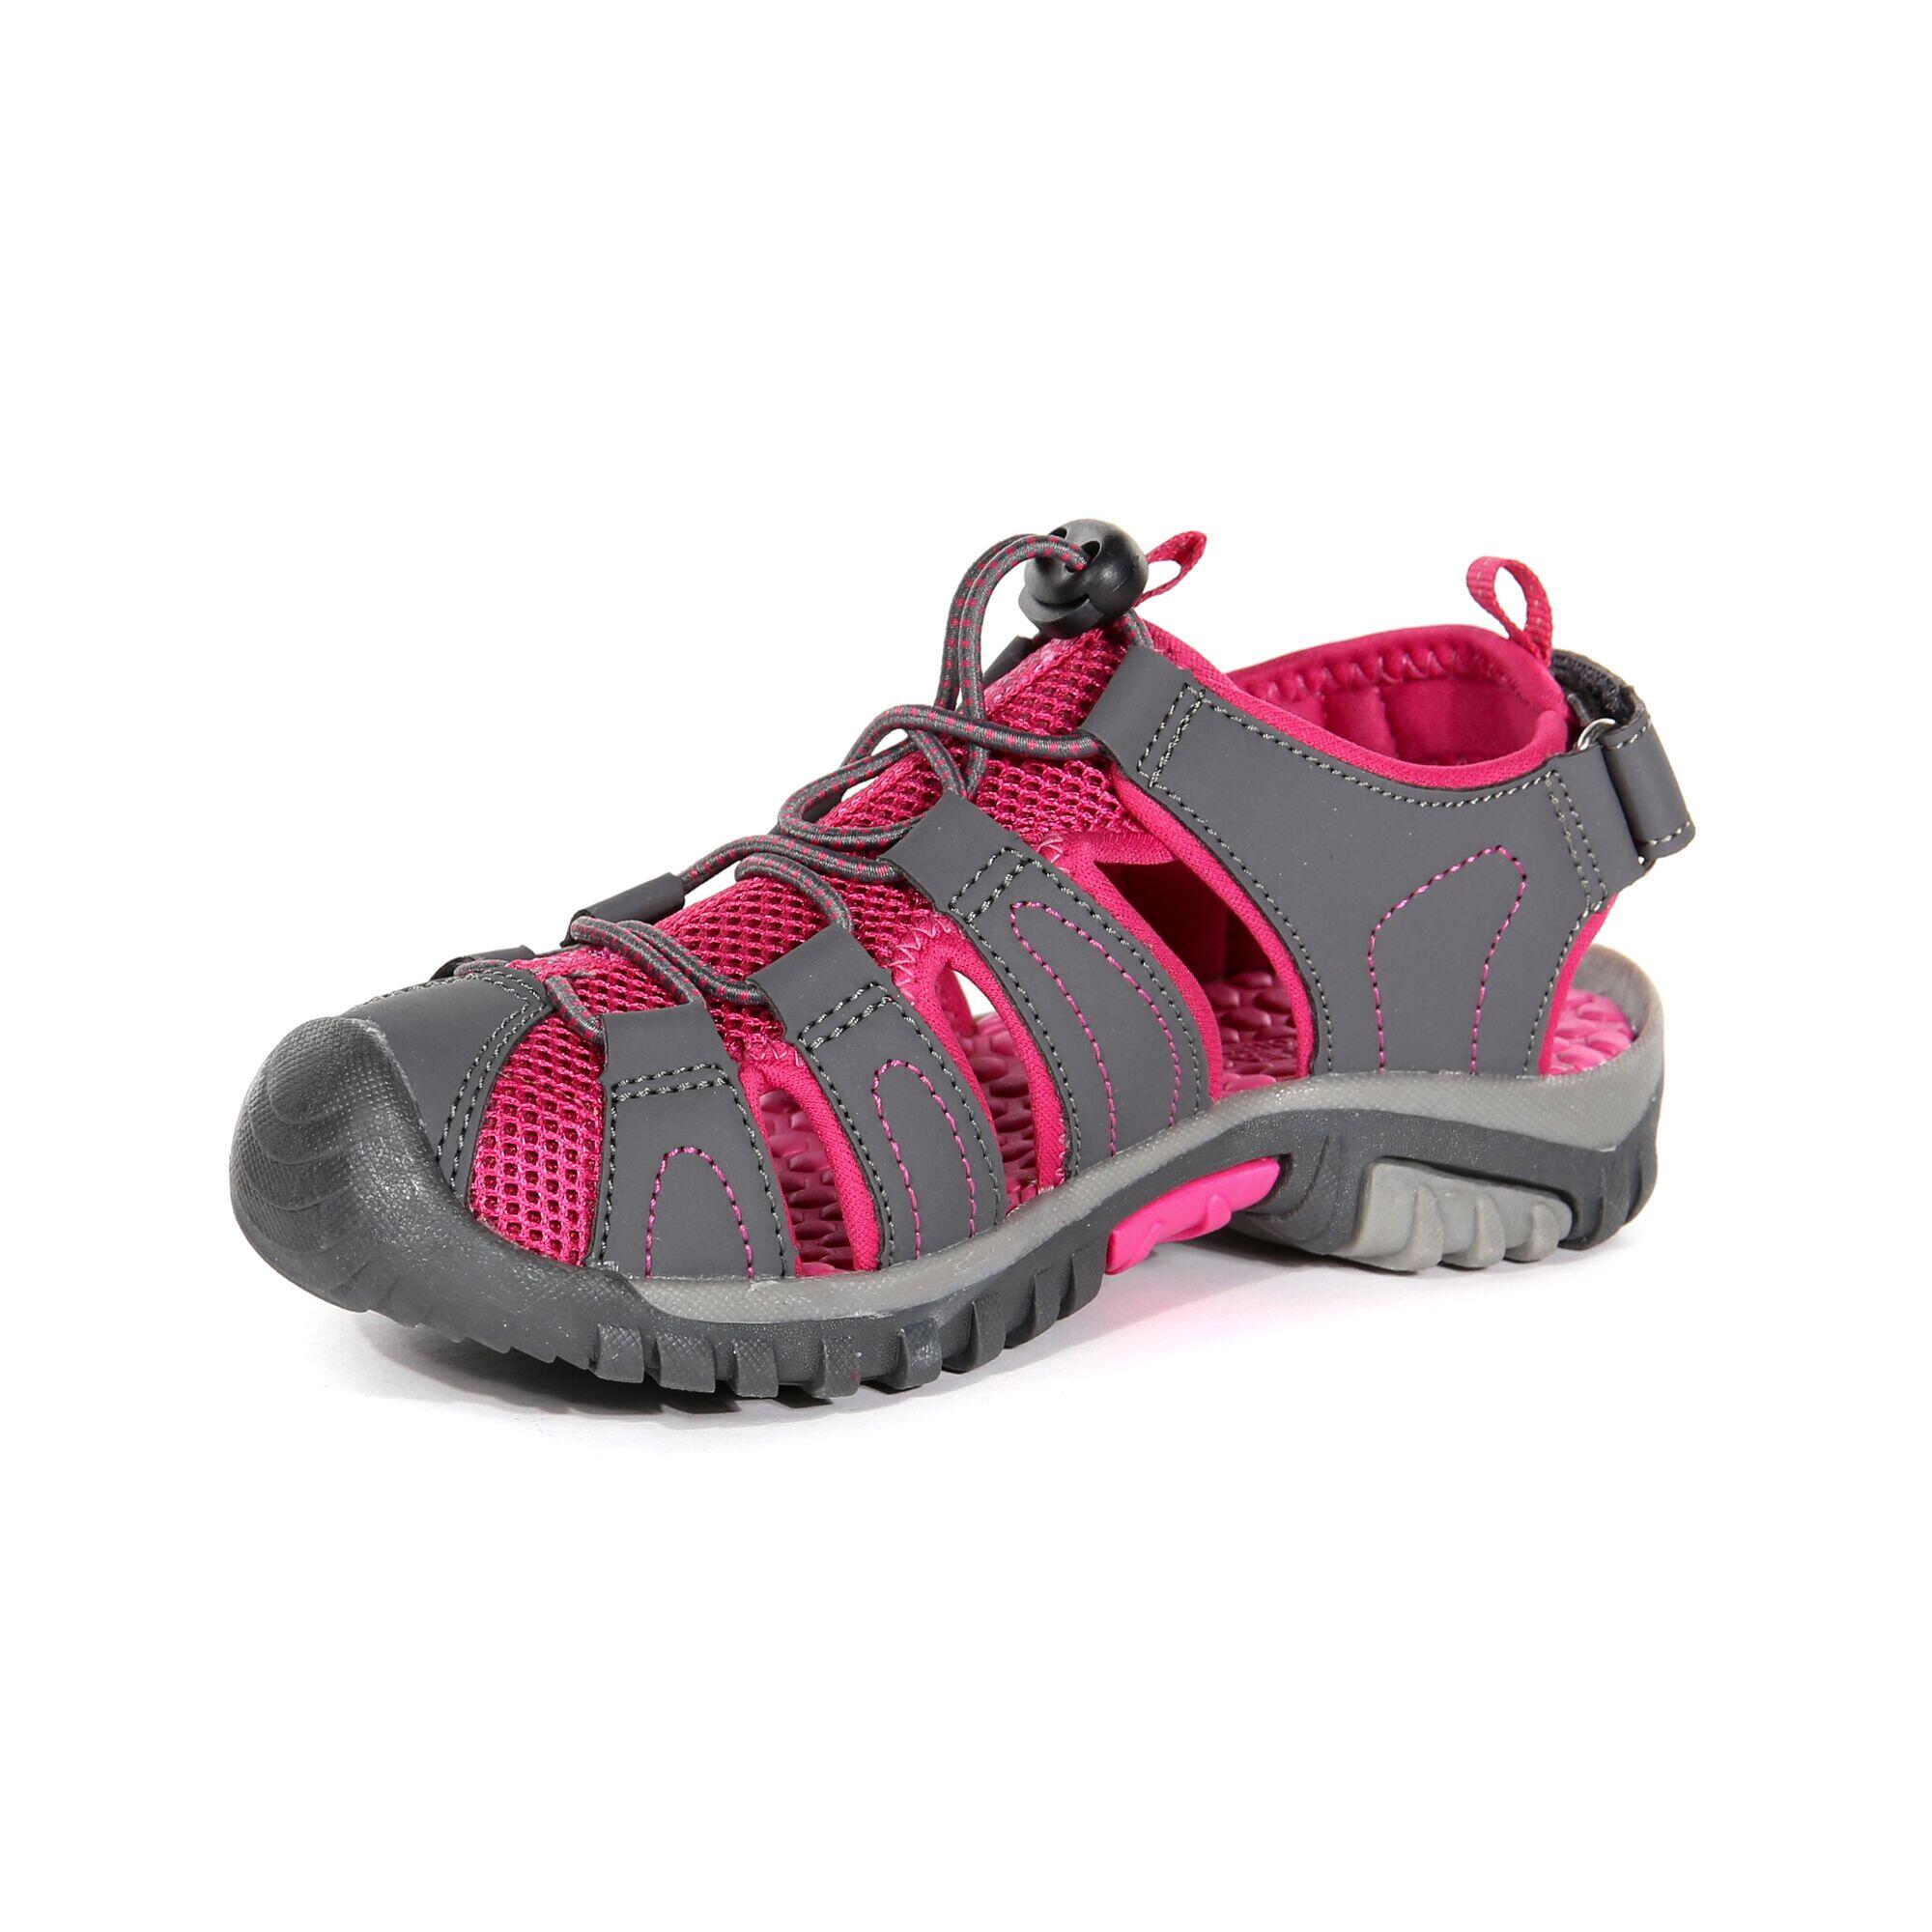 Westshore Junior Kids Walking Sandals - Granite Grey / Pink 4/5